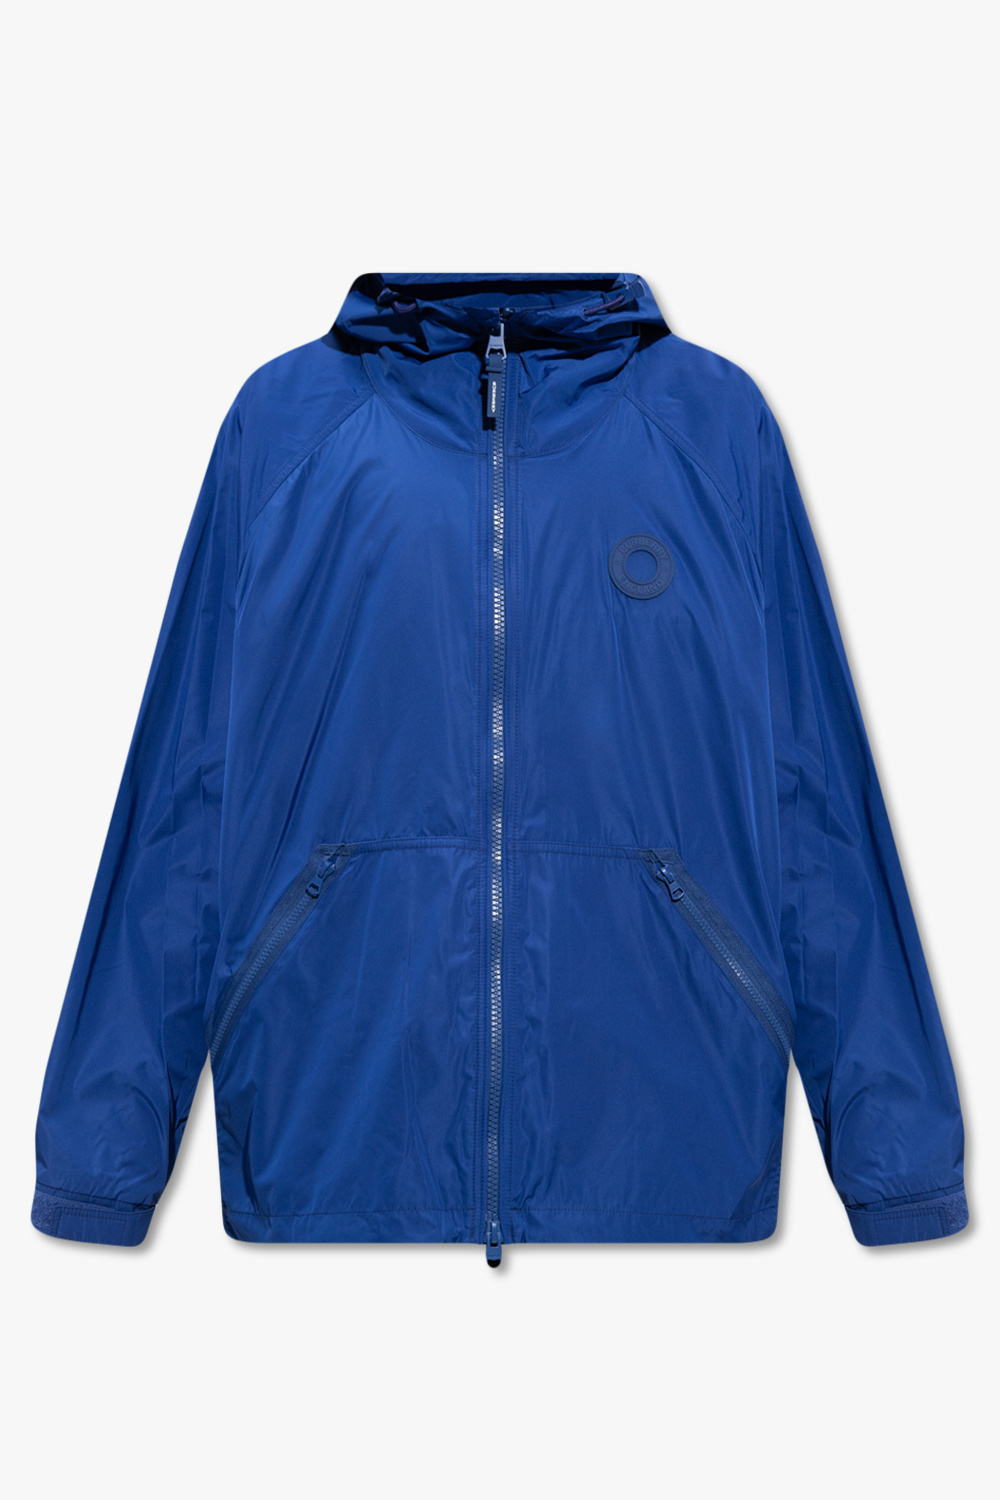 Burberry ‘Hardwick’ hooded jacket